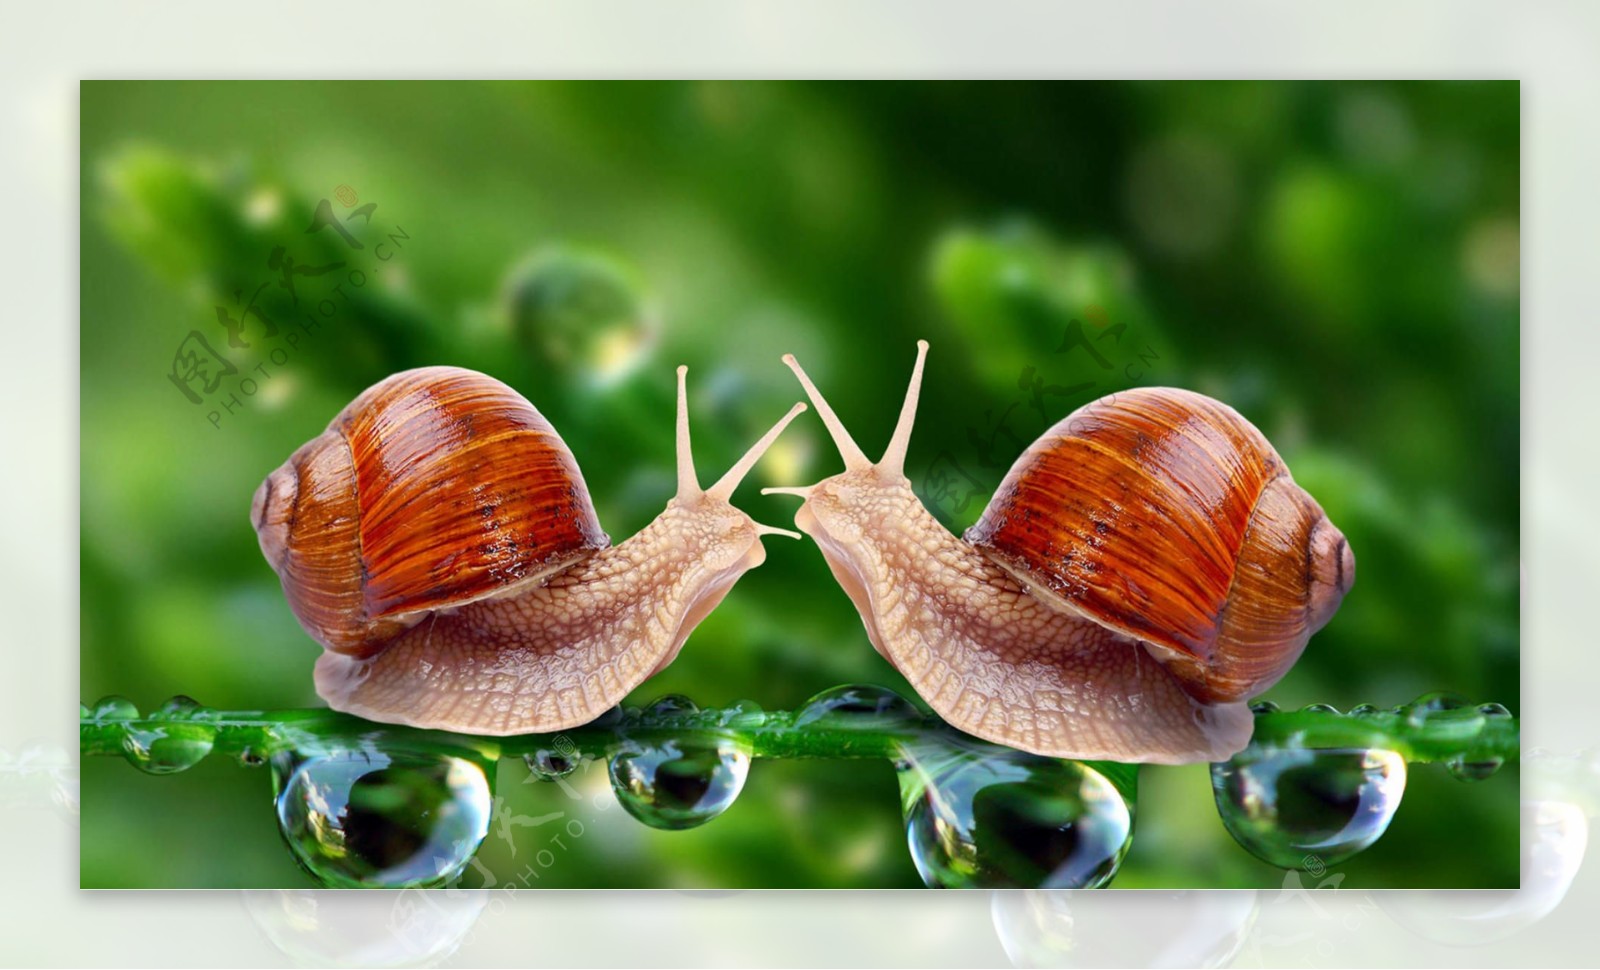 可爱两只蜗牛图片